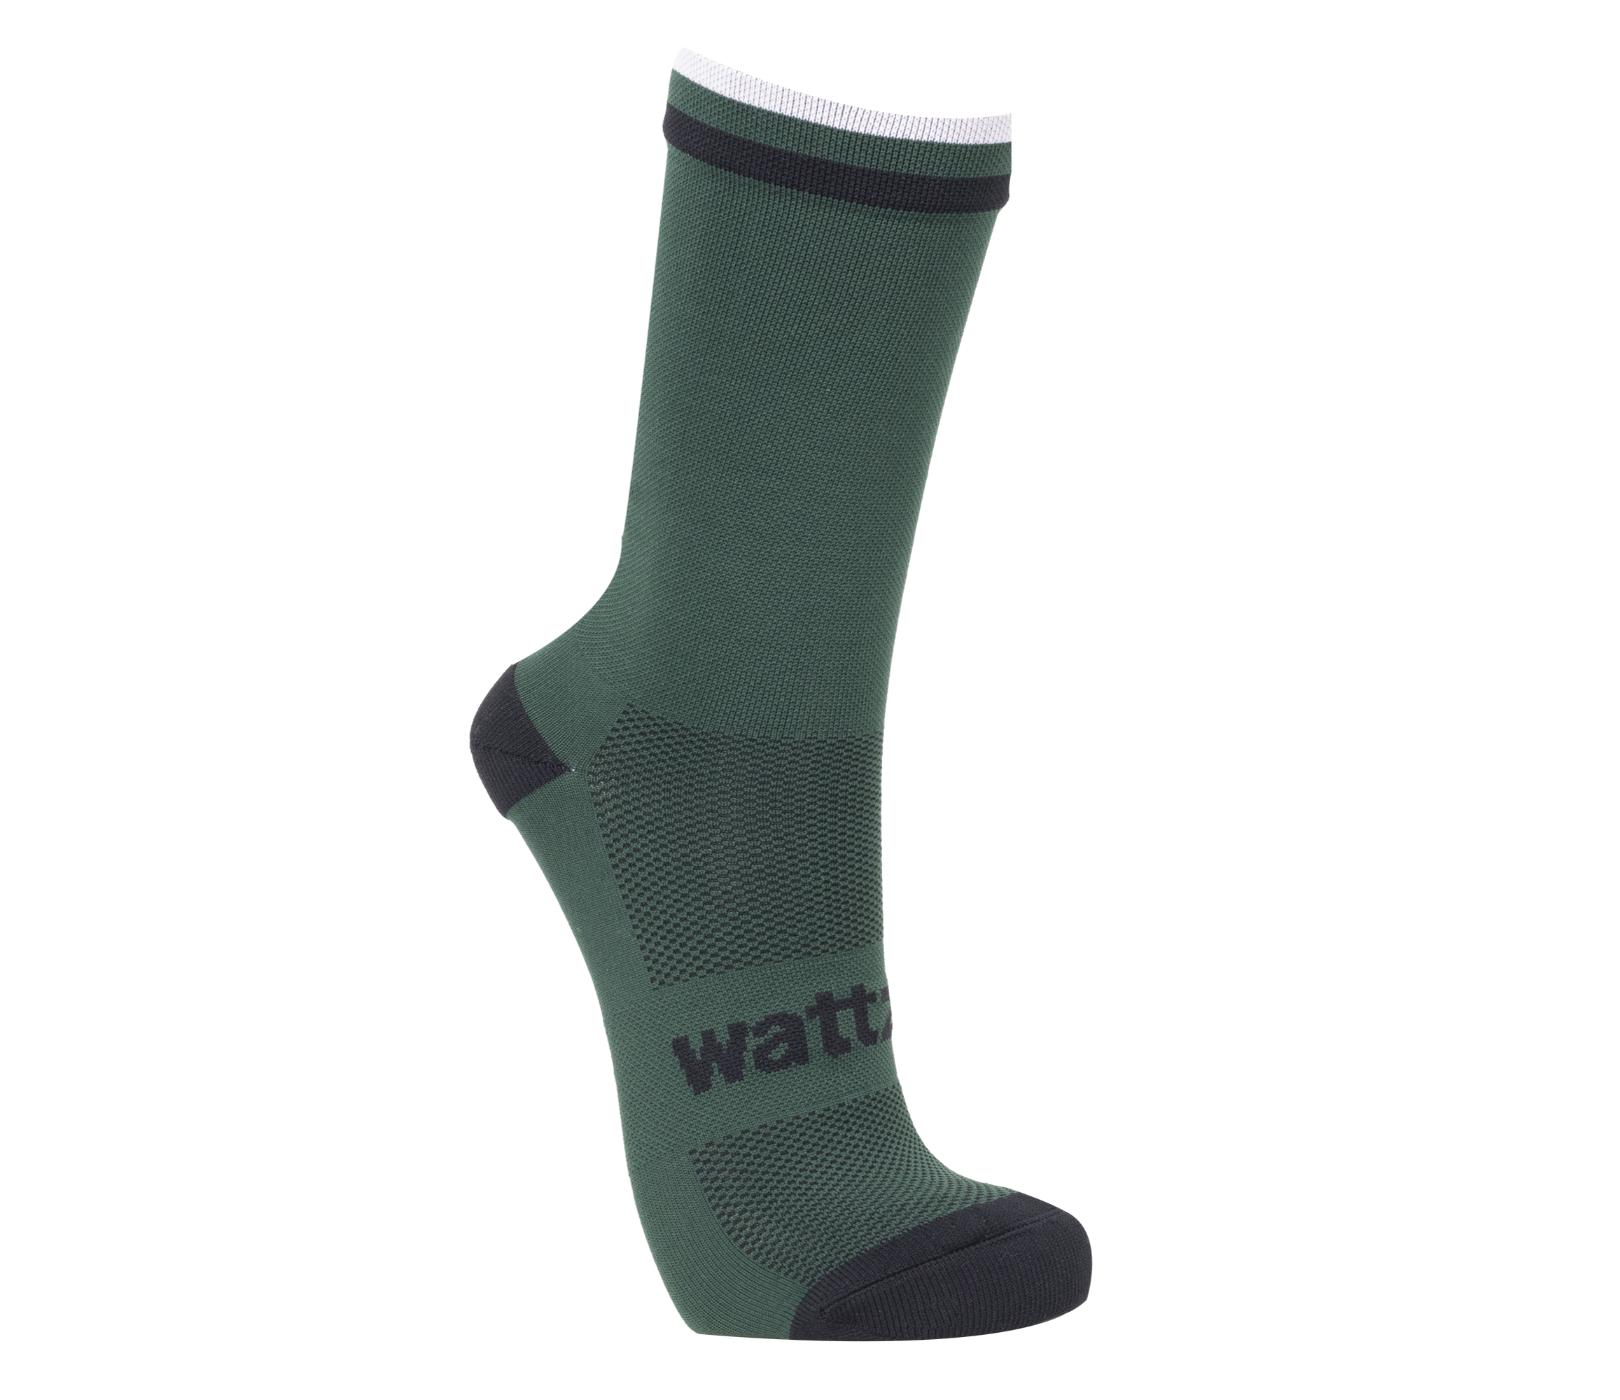 Wattz Knit Forest Green Men's Socks